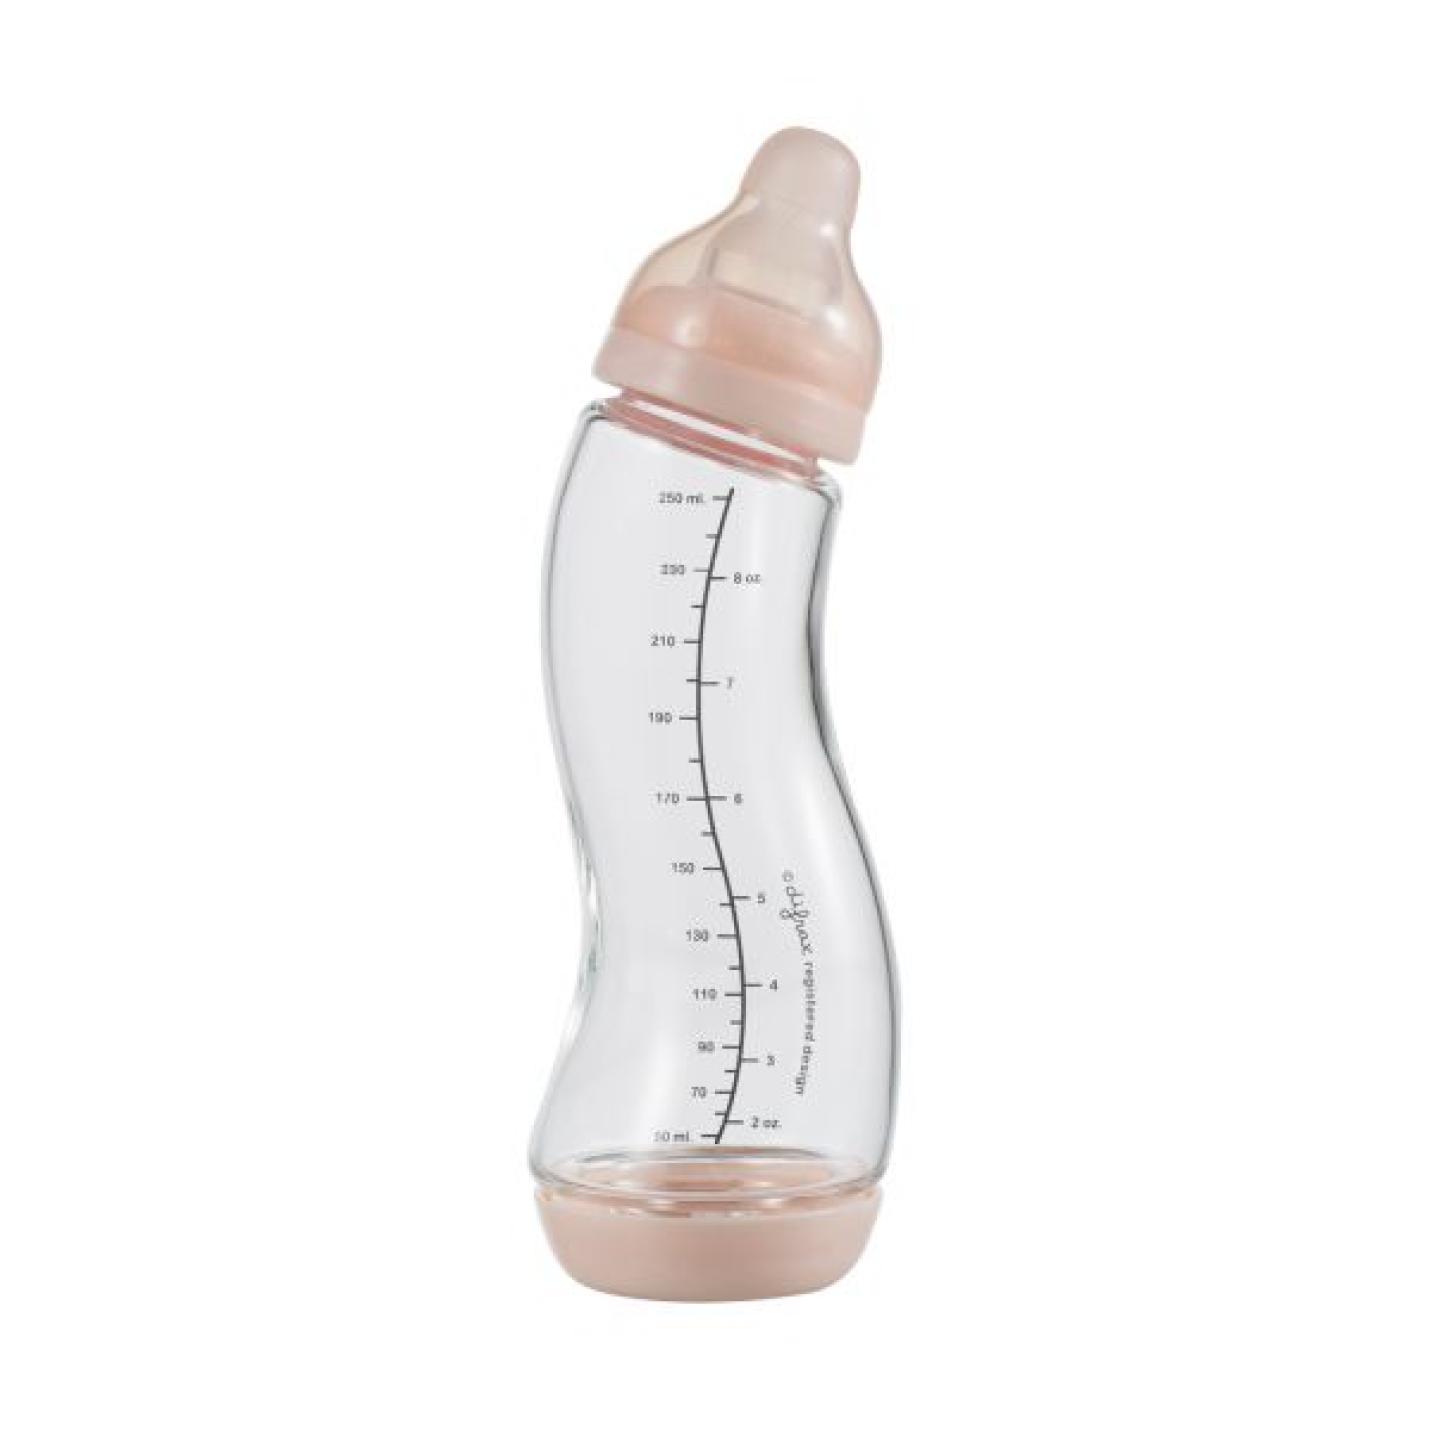 S-Fles Glas Roze baby fles roze van glas in s vorm met maatverdeling op fles en speen transparant erop schroefdop onderin